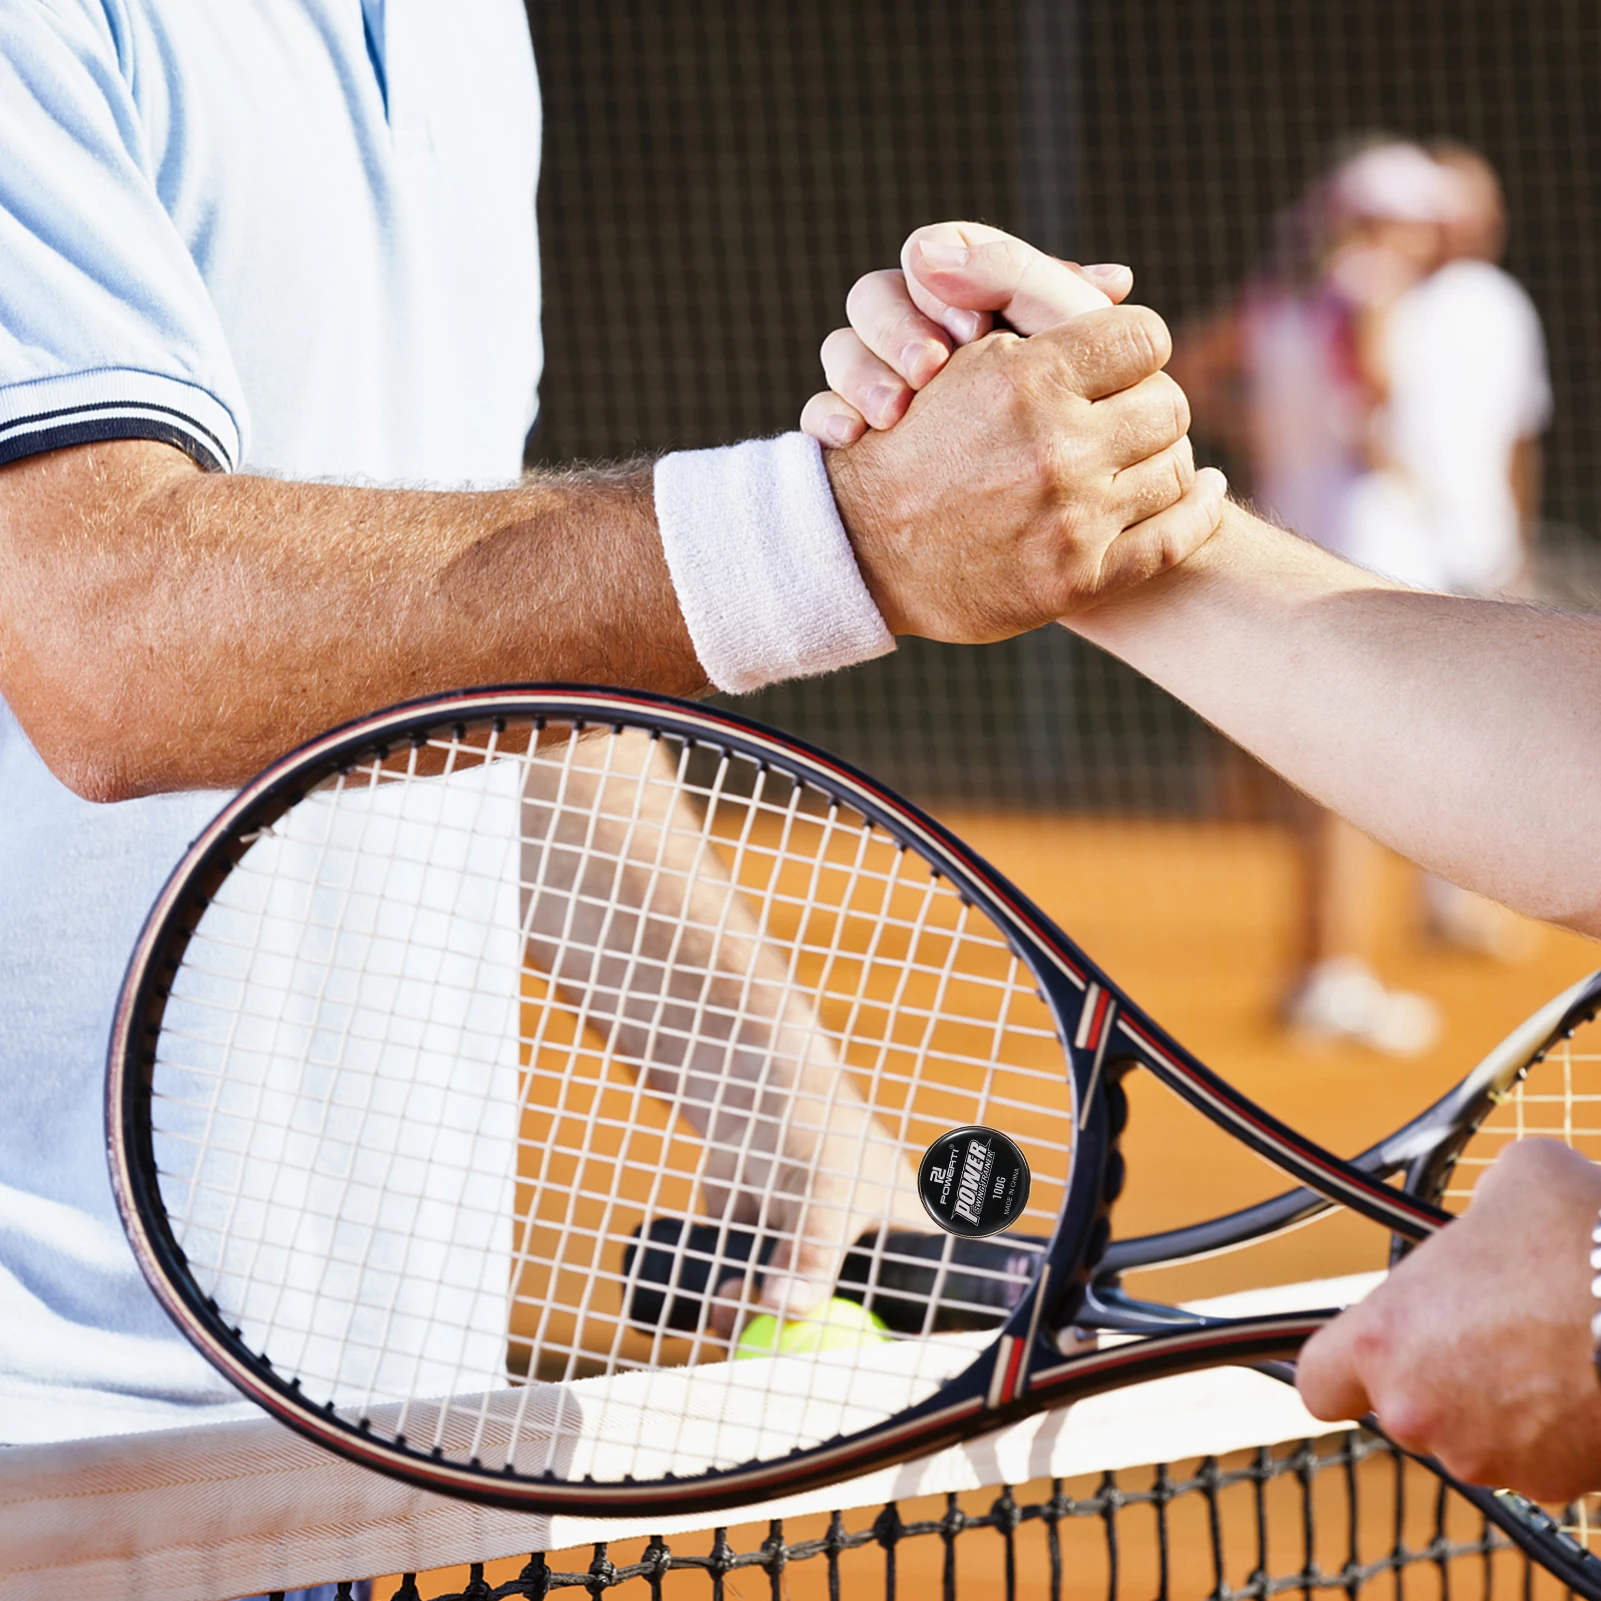 

Тренажер для теннисных качелей, тренажер для тенниса, ускоритель веса, тренажер для теннисных качелей с одной поддержкой, портативный тренажер для теннисных качелей